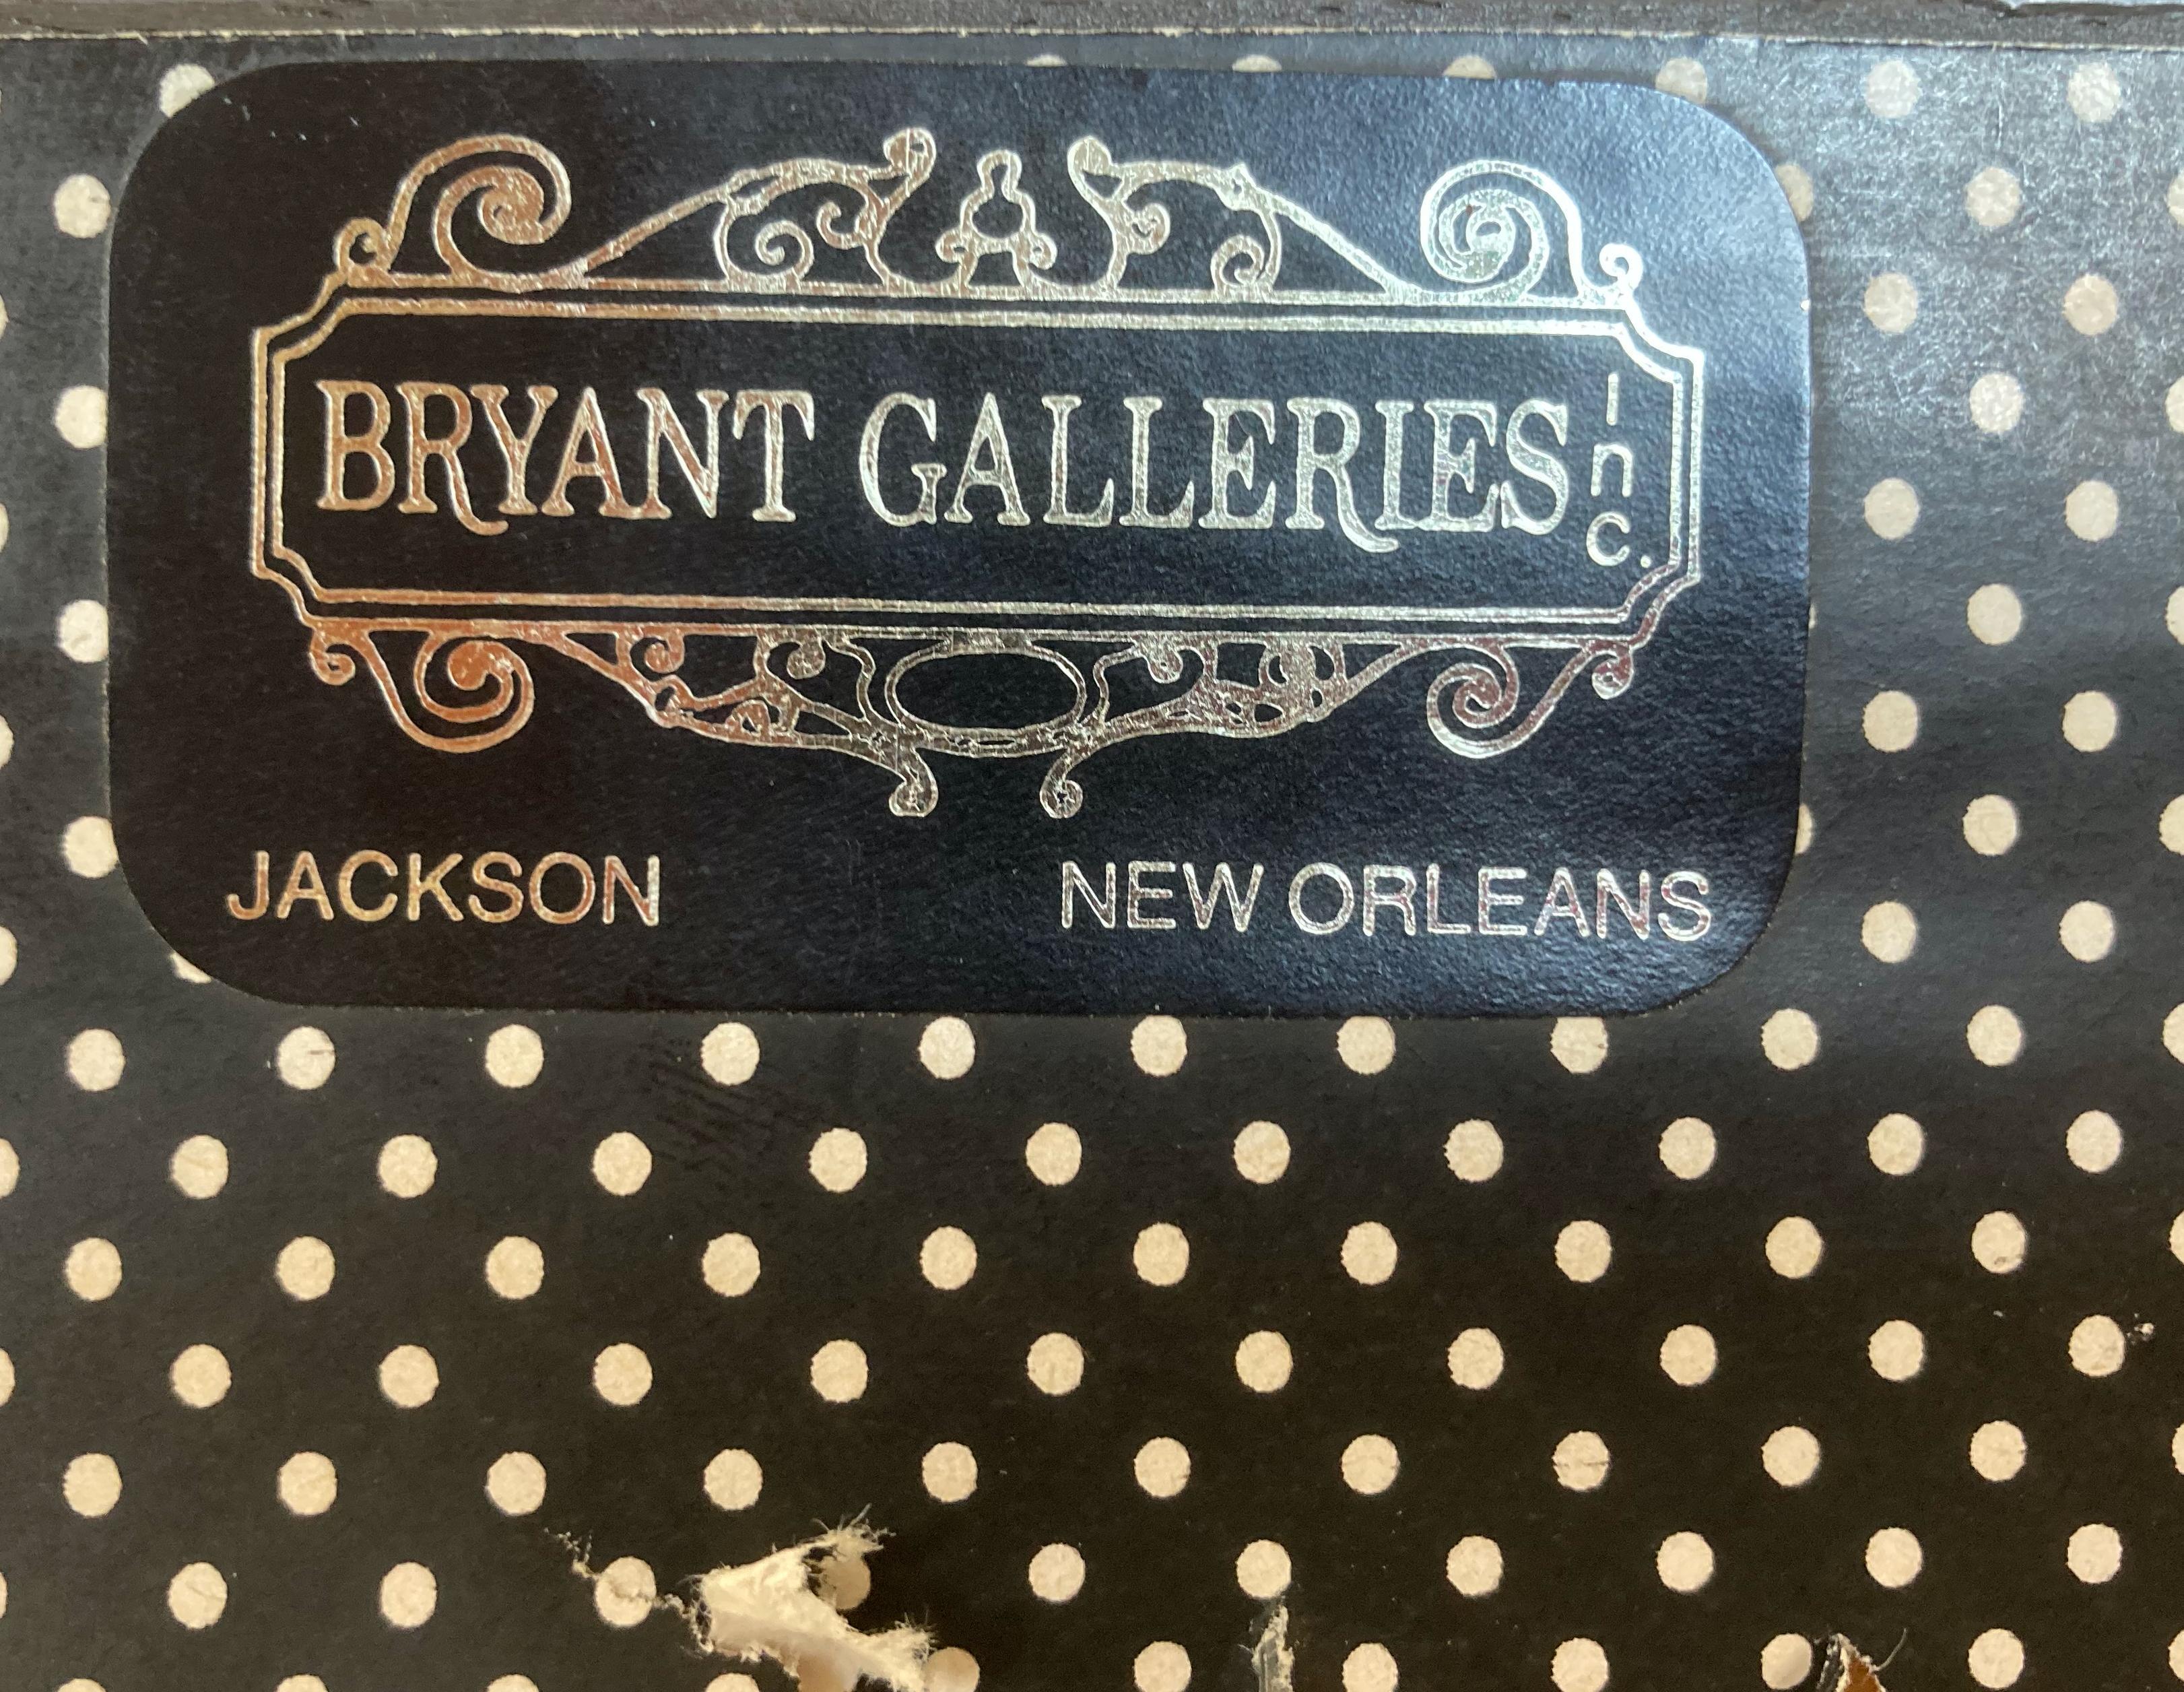 Der aus Alabama stammende Künstler Donny Finley hat nicht nur in Museen und Firmensammlungen ausgestellt, sondern auch jahrelang in den renommierten Bryant Galleries in der Royal Street in New Orleans (mit Niederlassungen in Jackson, Mississippi und